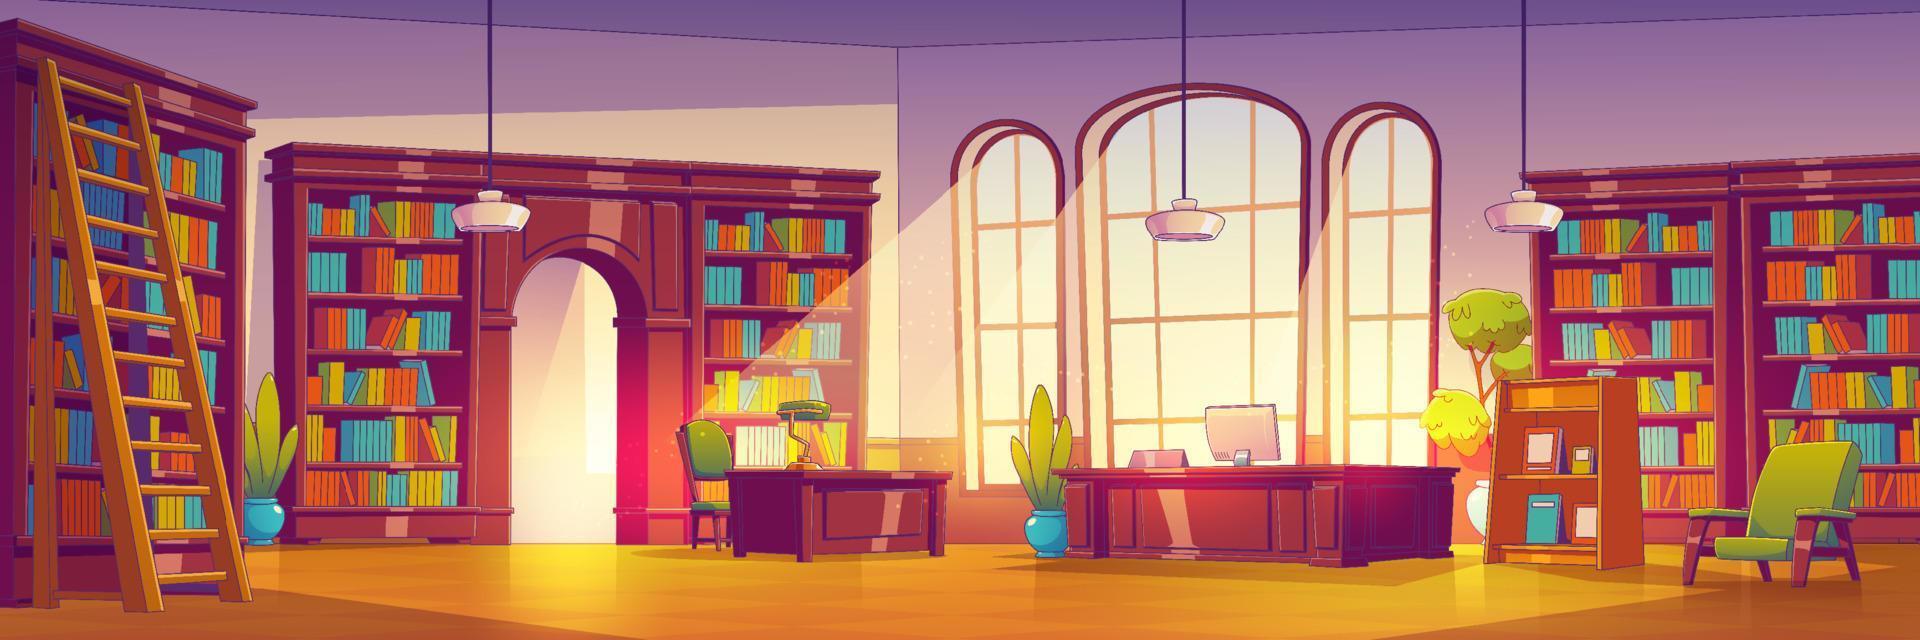 dessin animé bibliothèque intérieur avec beaucoup livres vecteur